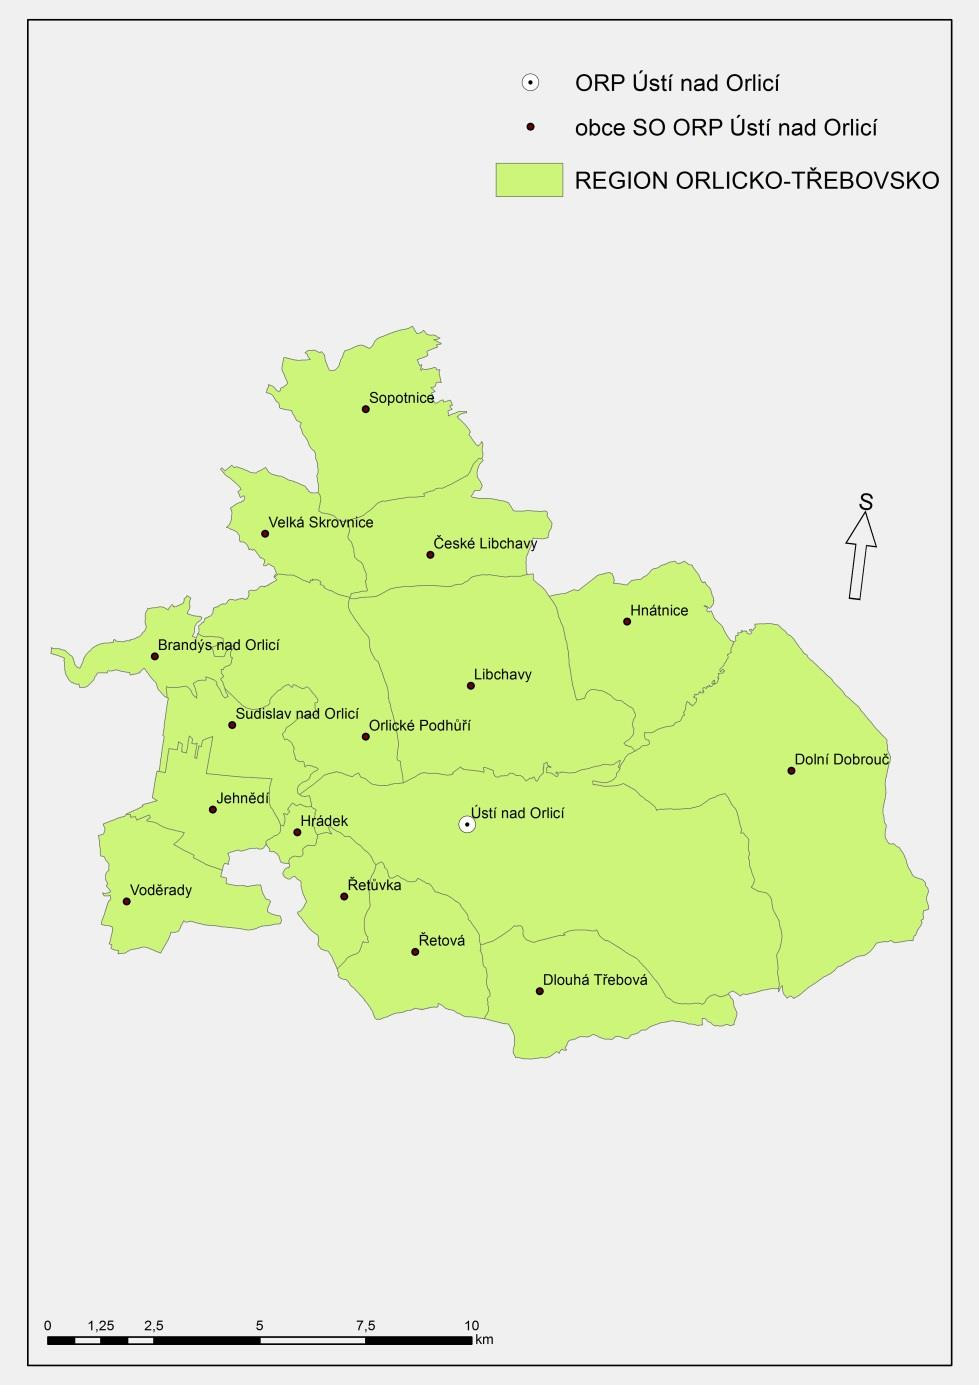 2 Souhrnná zpráva za všechny DSO v území Ve správním obvodu ORP Ústí nad Orlicí působí 1 dobrovolný svazek obcí (REGION ORLICKO-